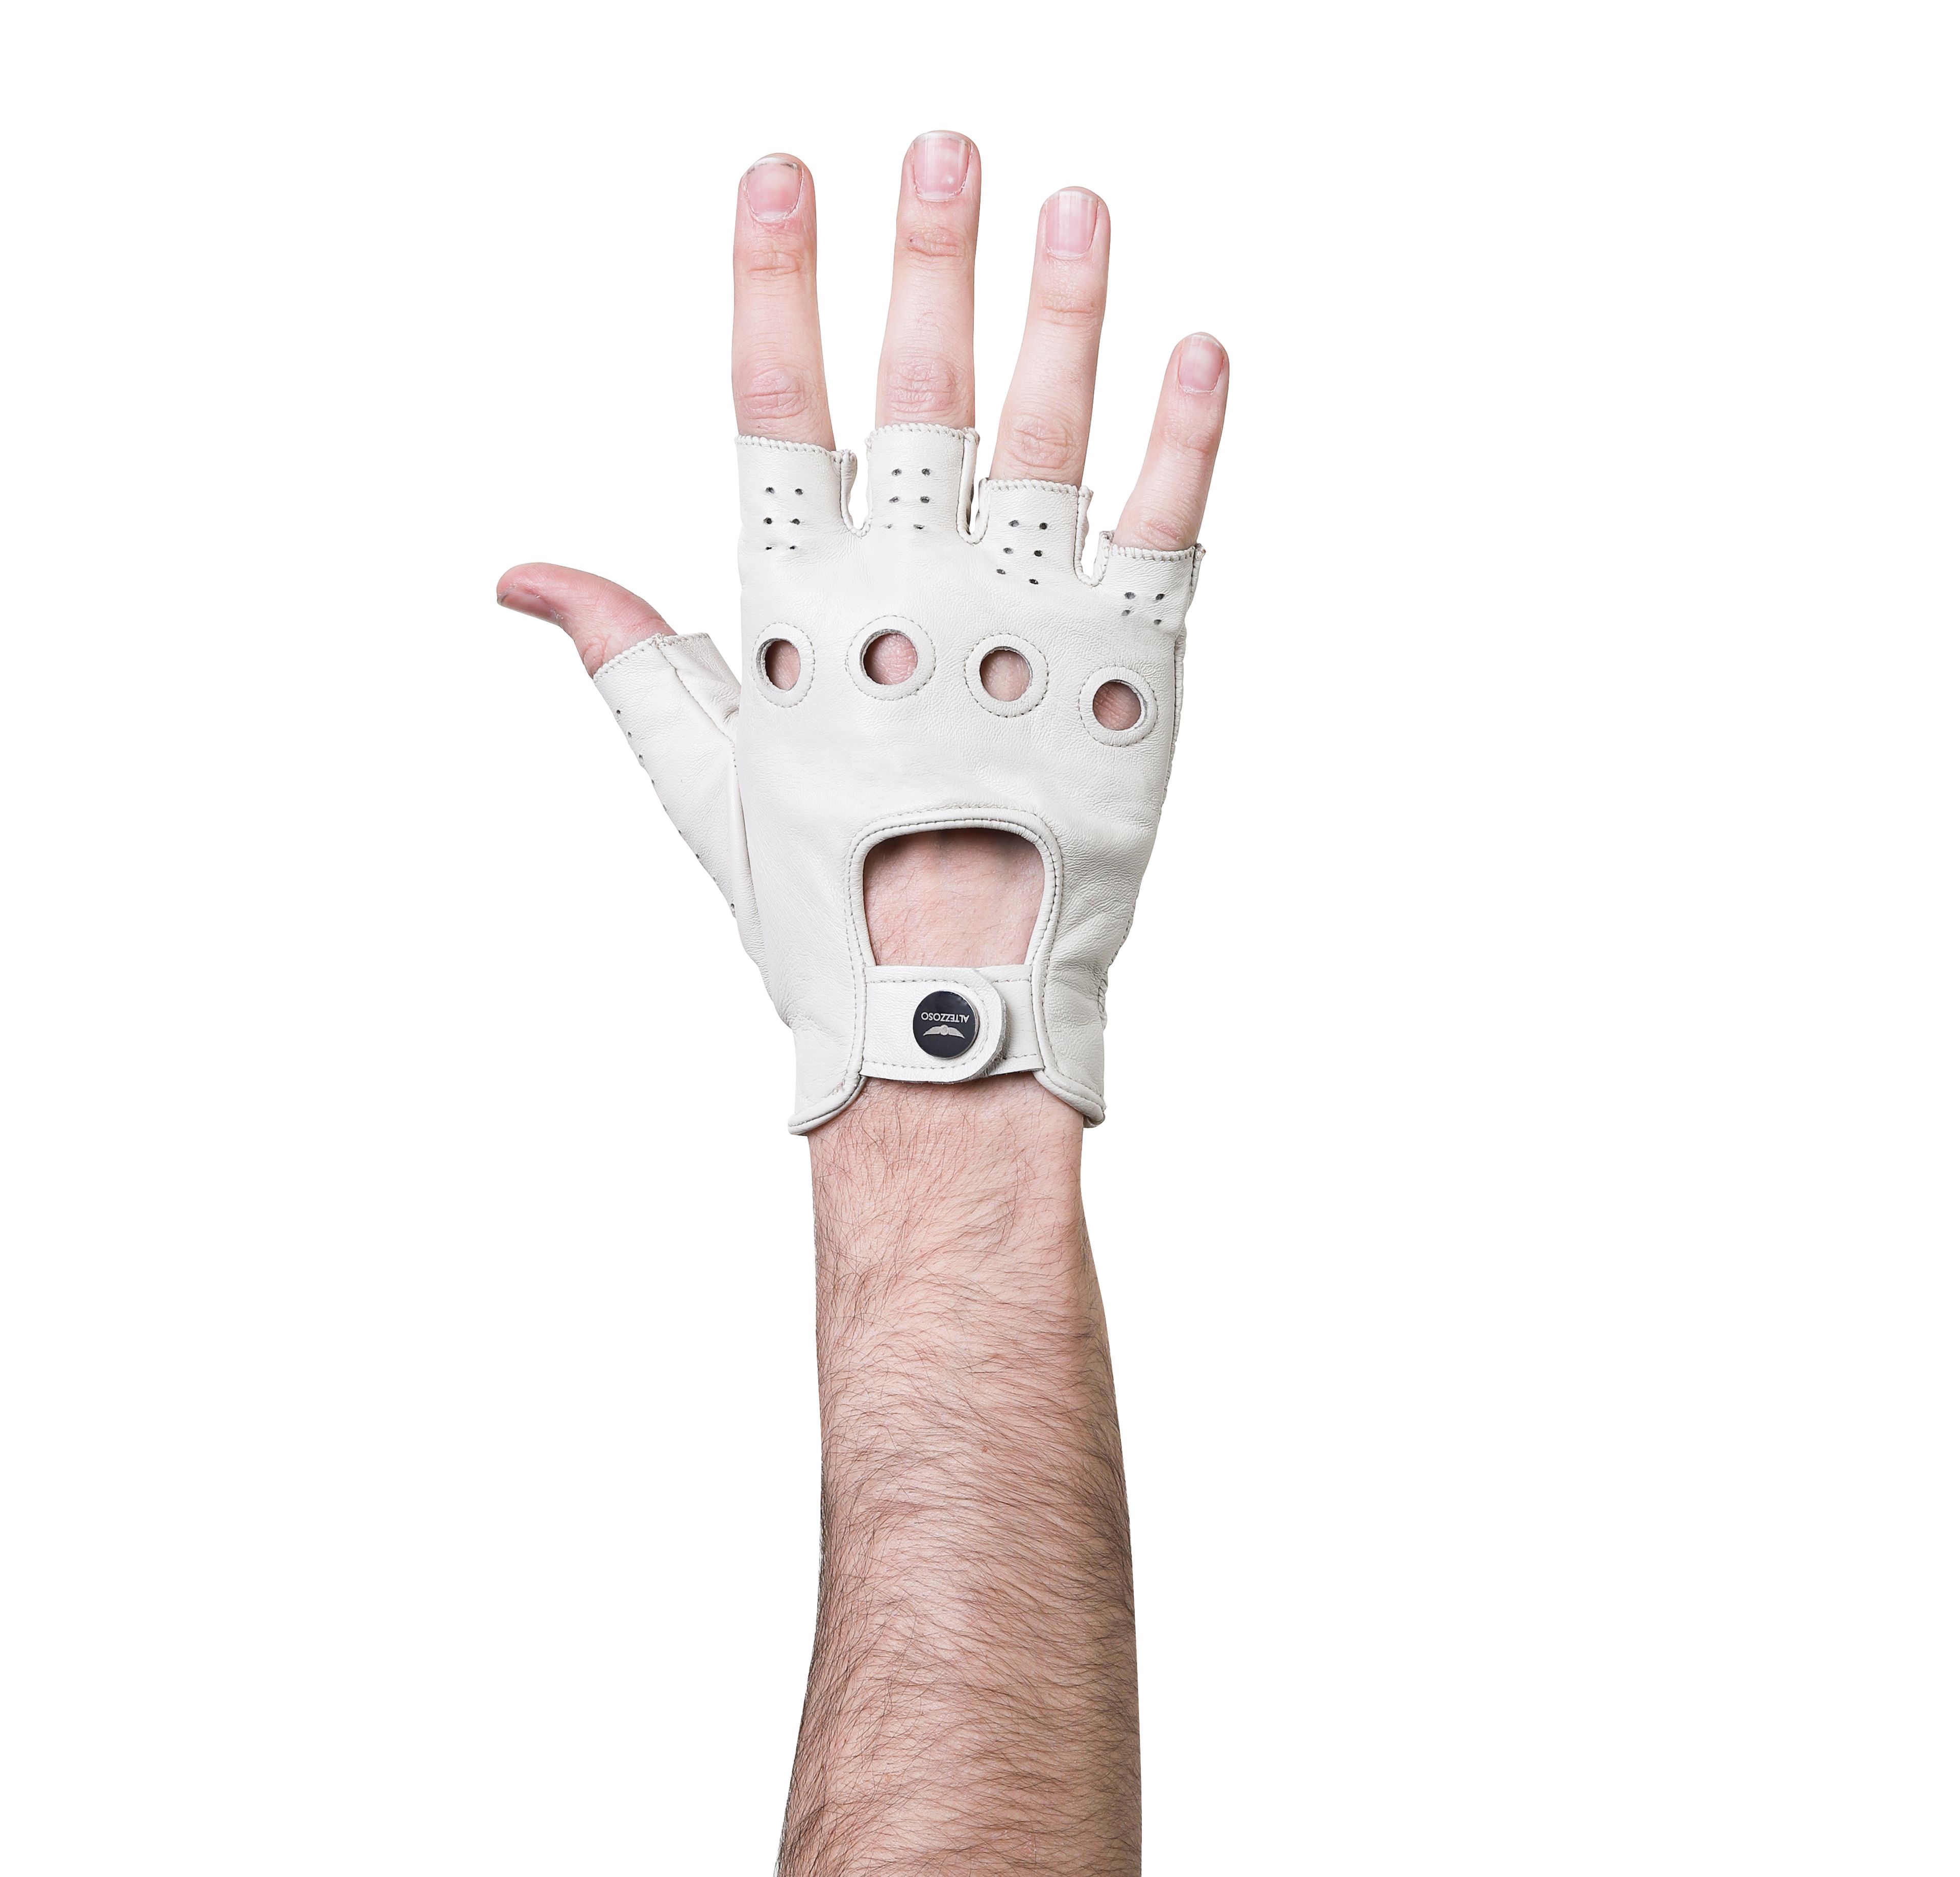 Munro Fingerless Leather Driving Gloves for Men